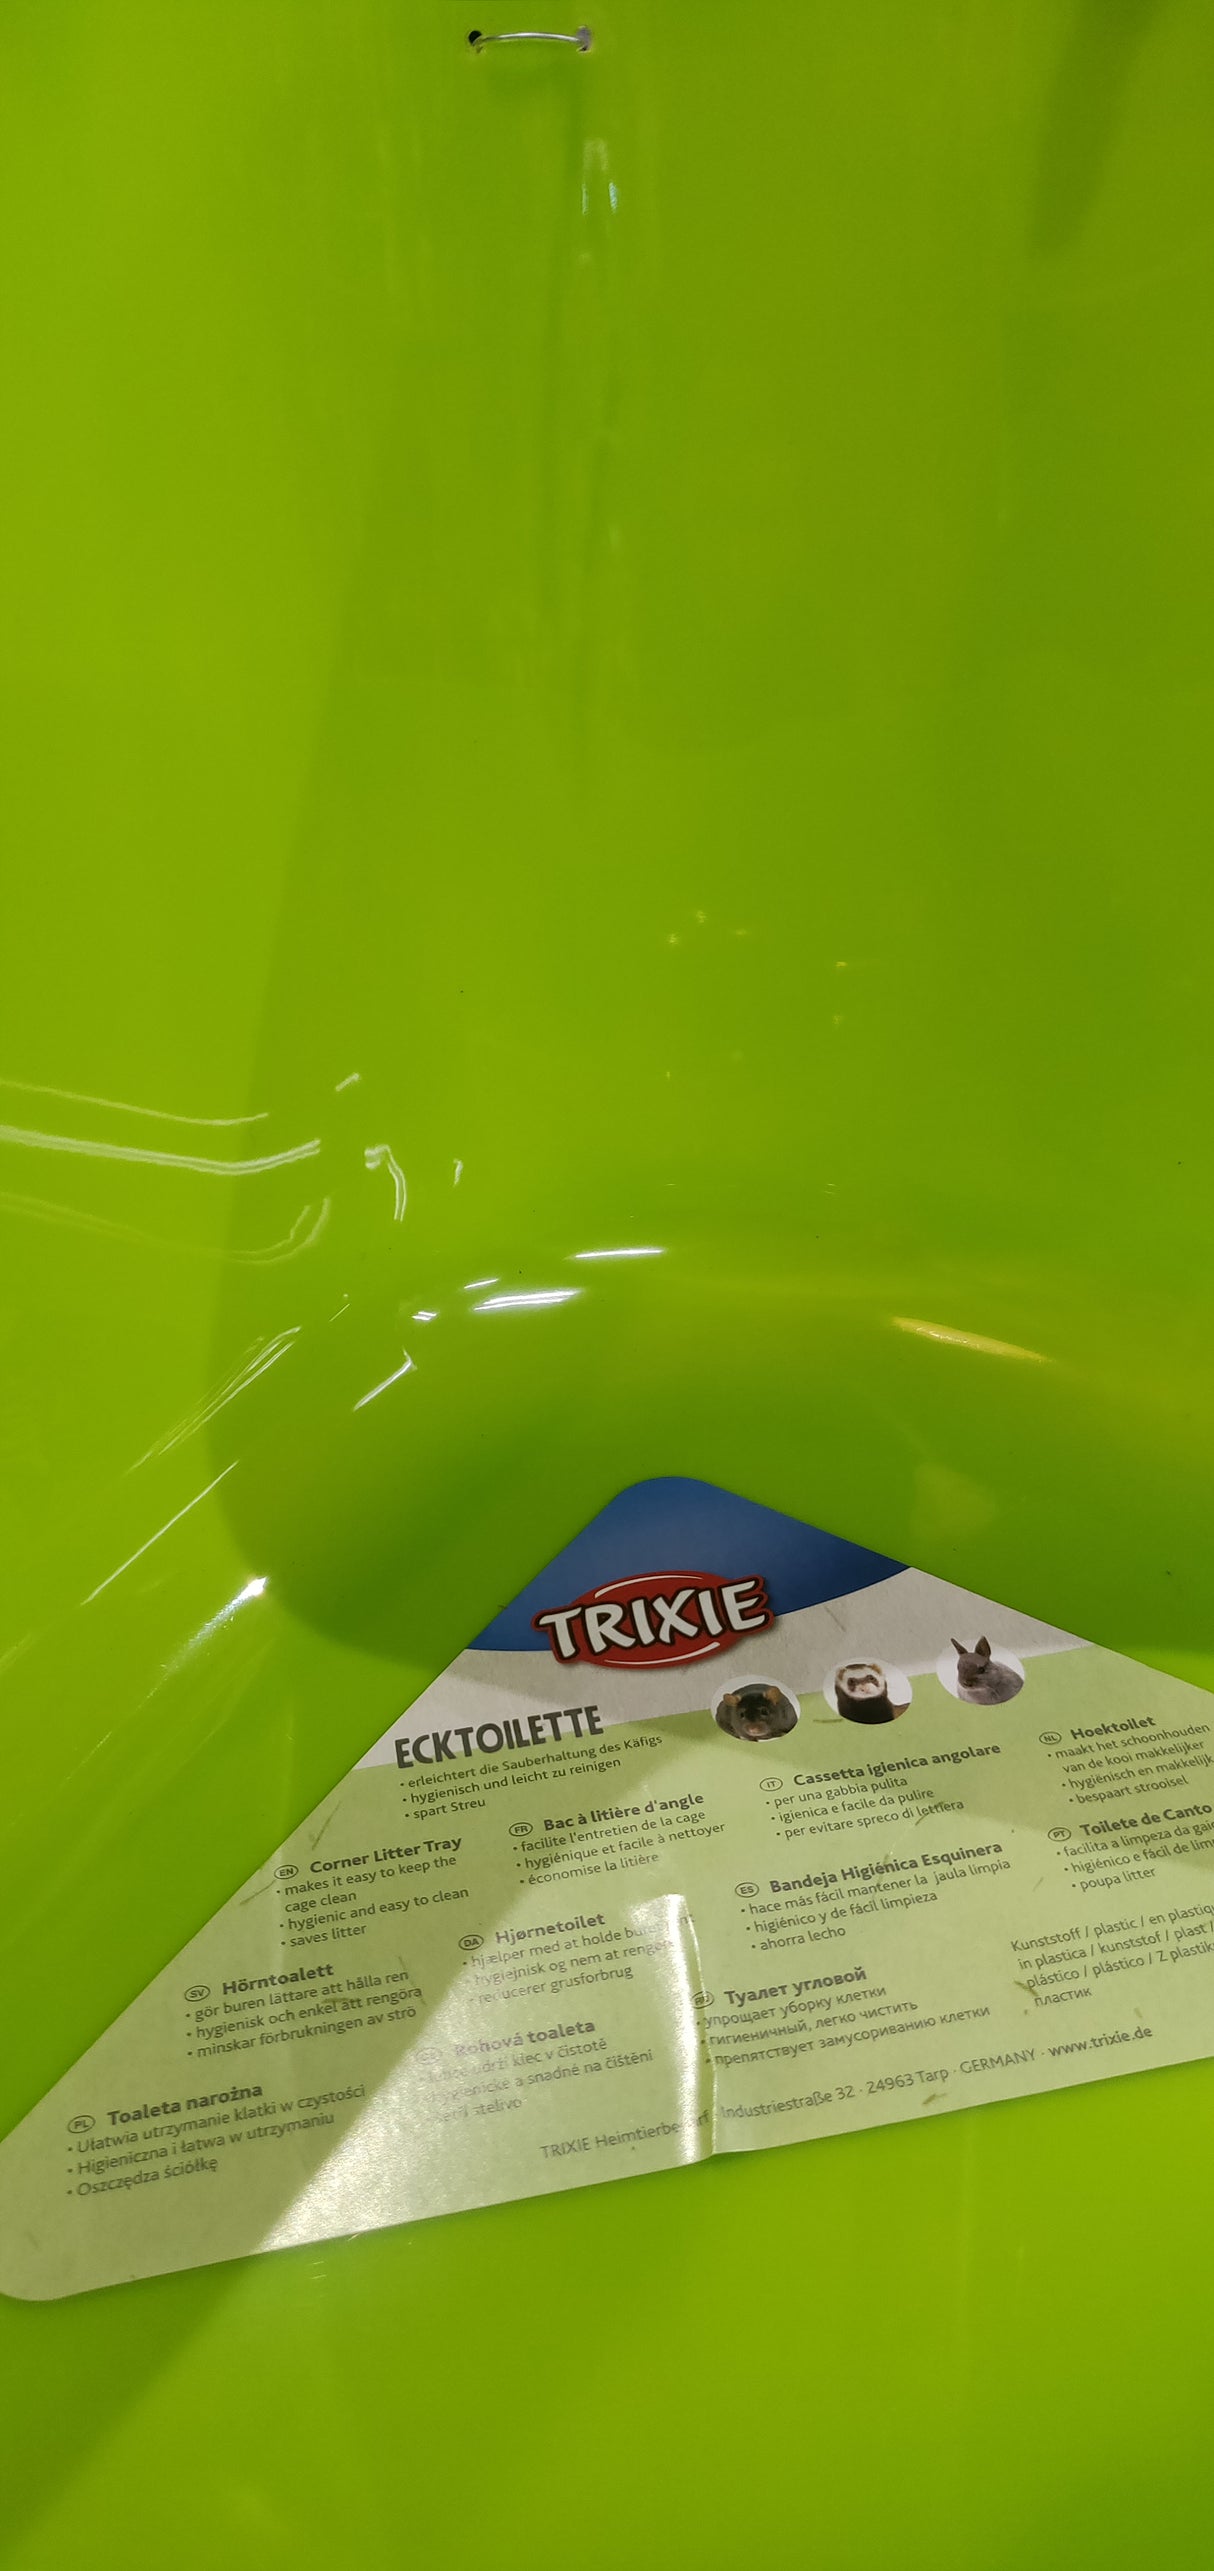 En grøn plastikbeholder med en etiket på egnet til Hjørnetoilet til kaniner, marsvin, fritter o.l. (gnavere) af Trixie.